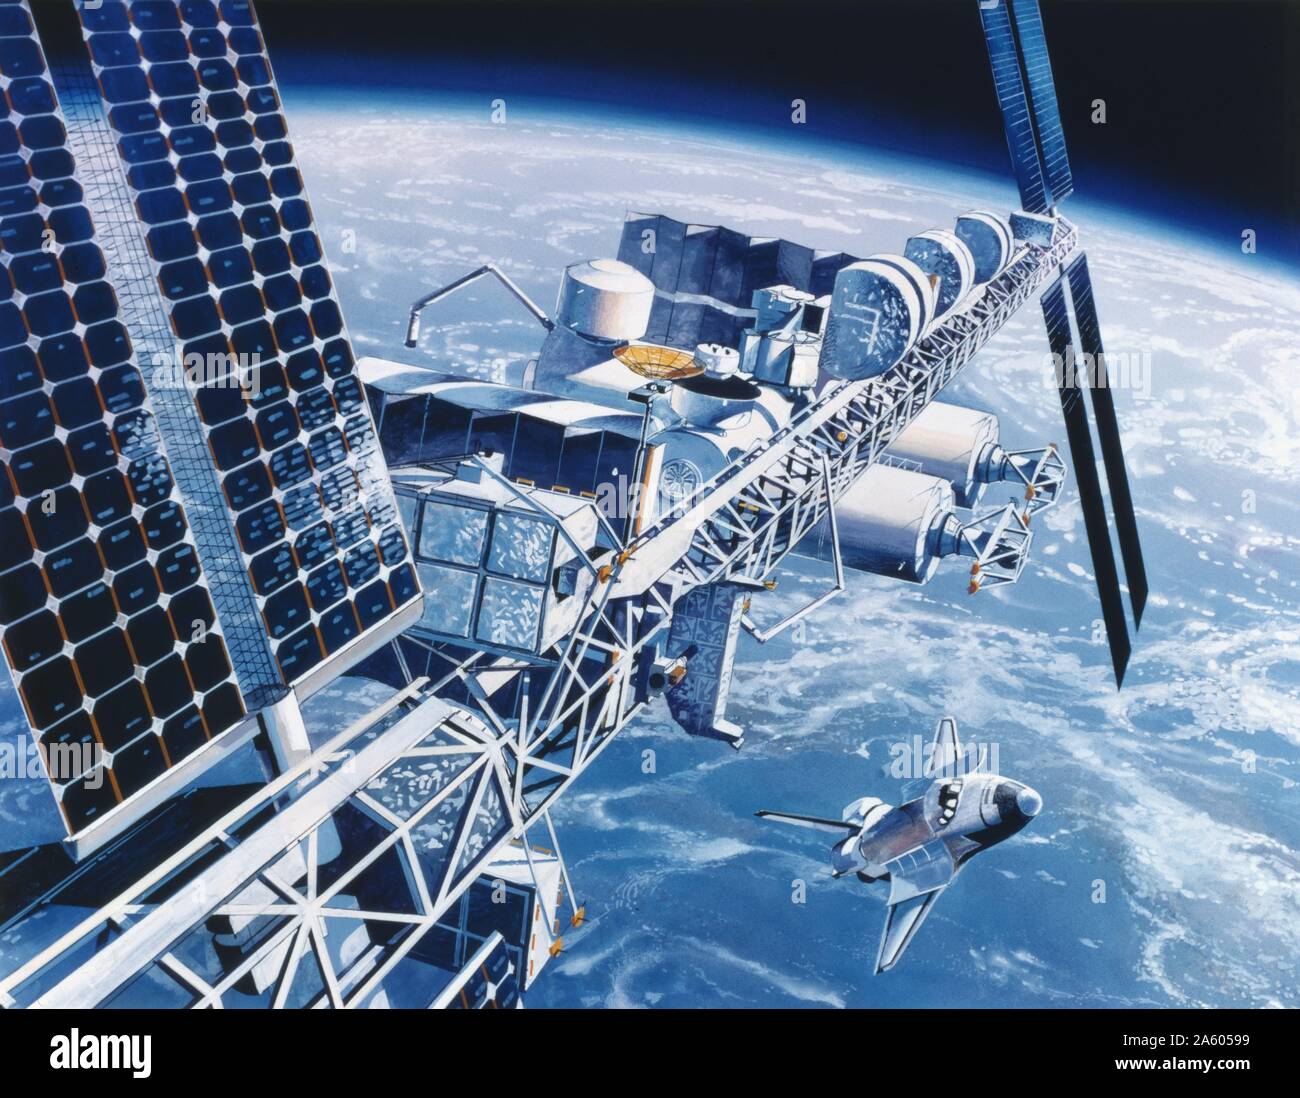 L'interprétation de l'artiste projet Station spatiale américaine "liberté". Cette station spatiale en orbite autour de la terre n'a jamais été construit et a évolué vers le programme de la Station spatiale internationale, avec la participation de la Russie. Banque D'Images